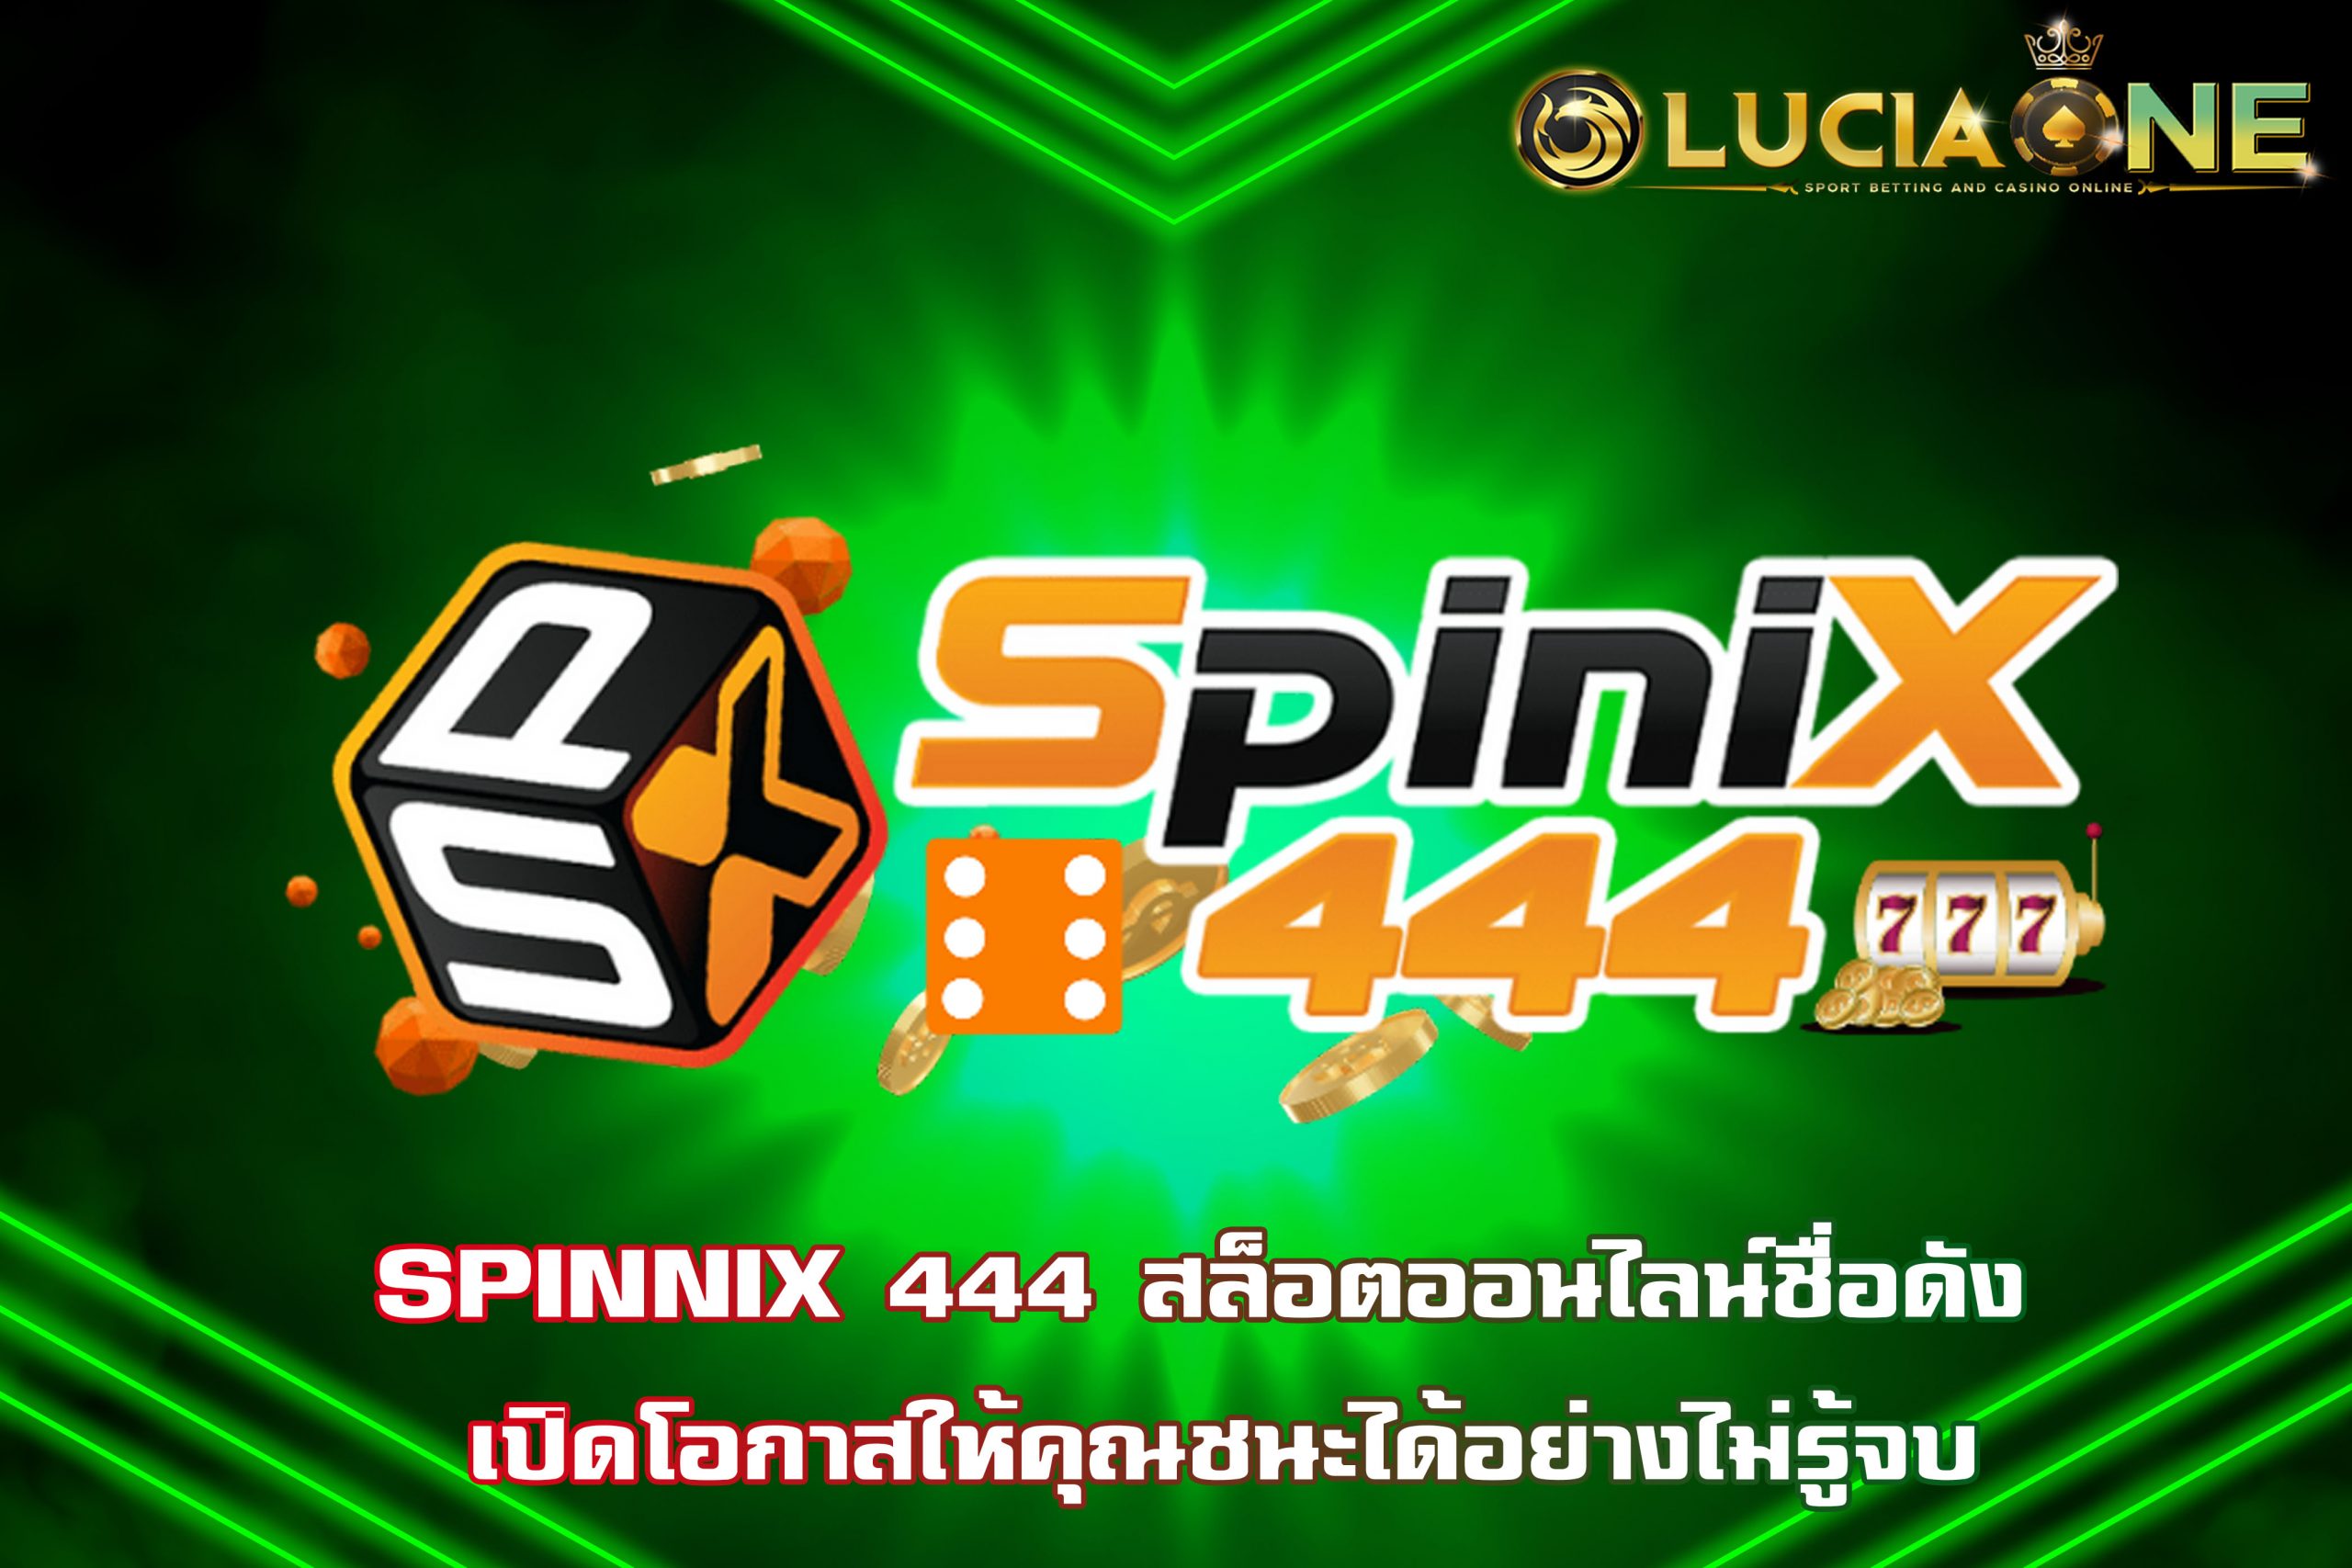 SPINNIX 444 สล็อตออนไลน์ชื่อดัง เปิดโอกาสให้คุณชนะได้อย่างไม่รู้จบ